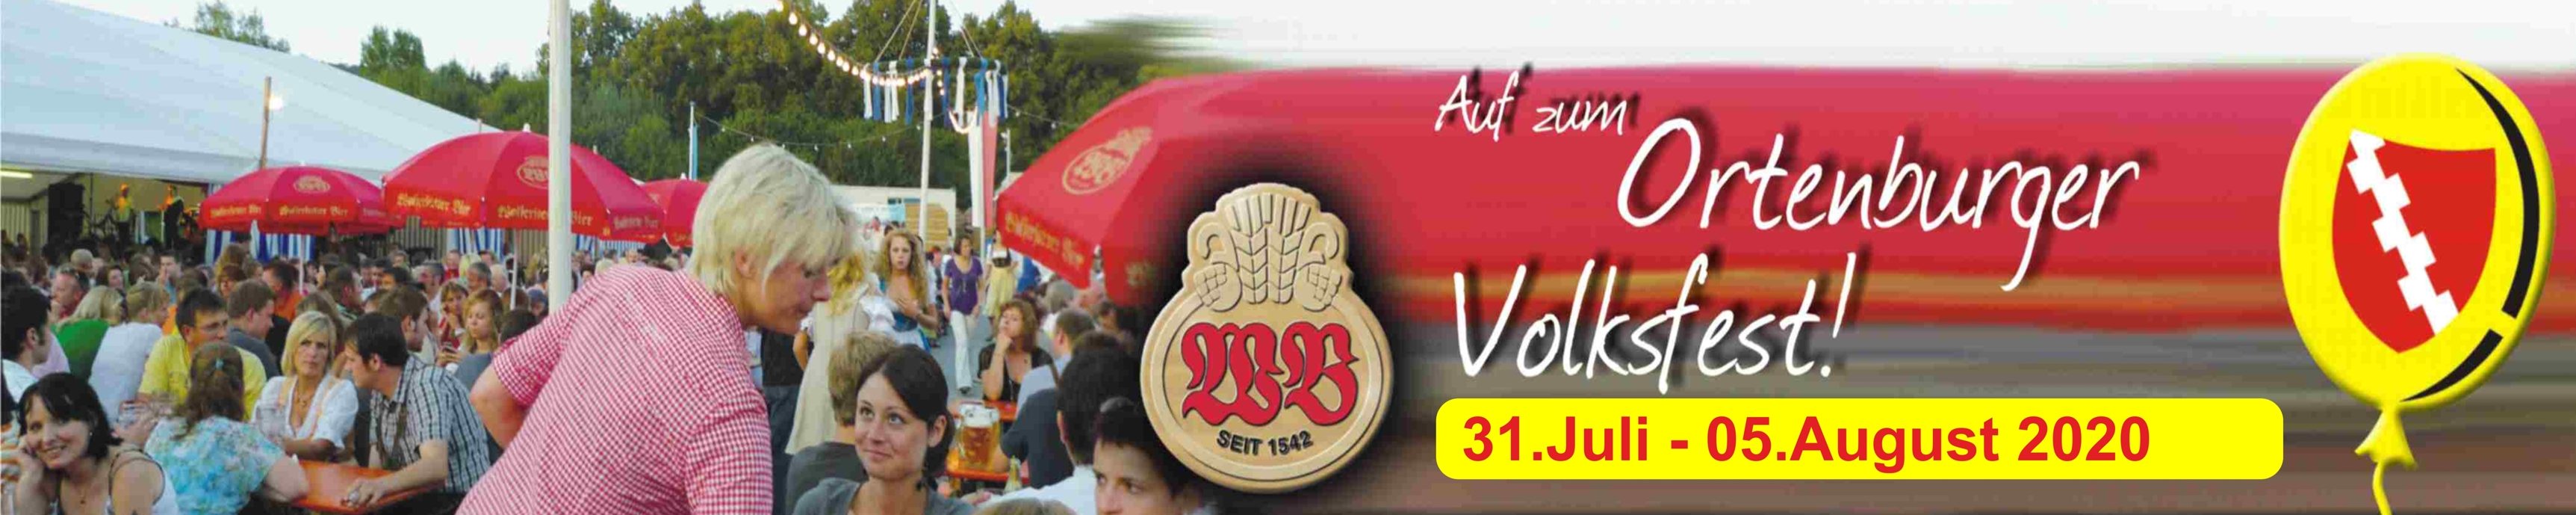 Ortenburger Volksfest